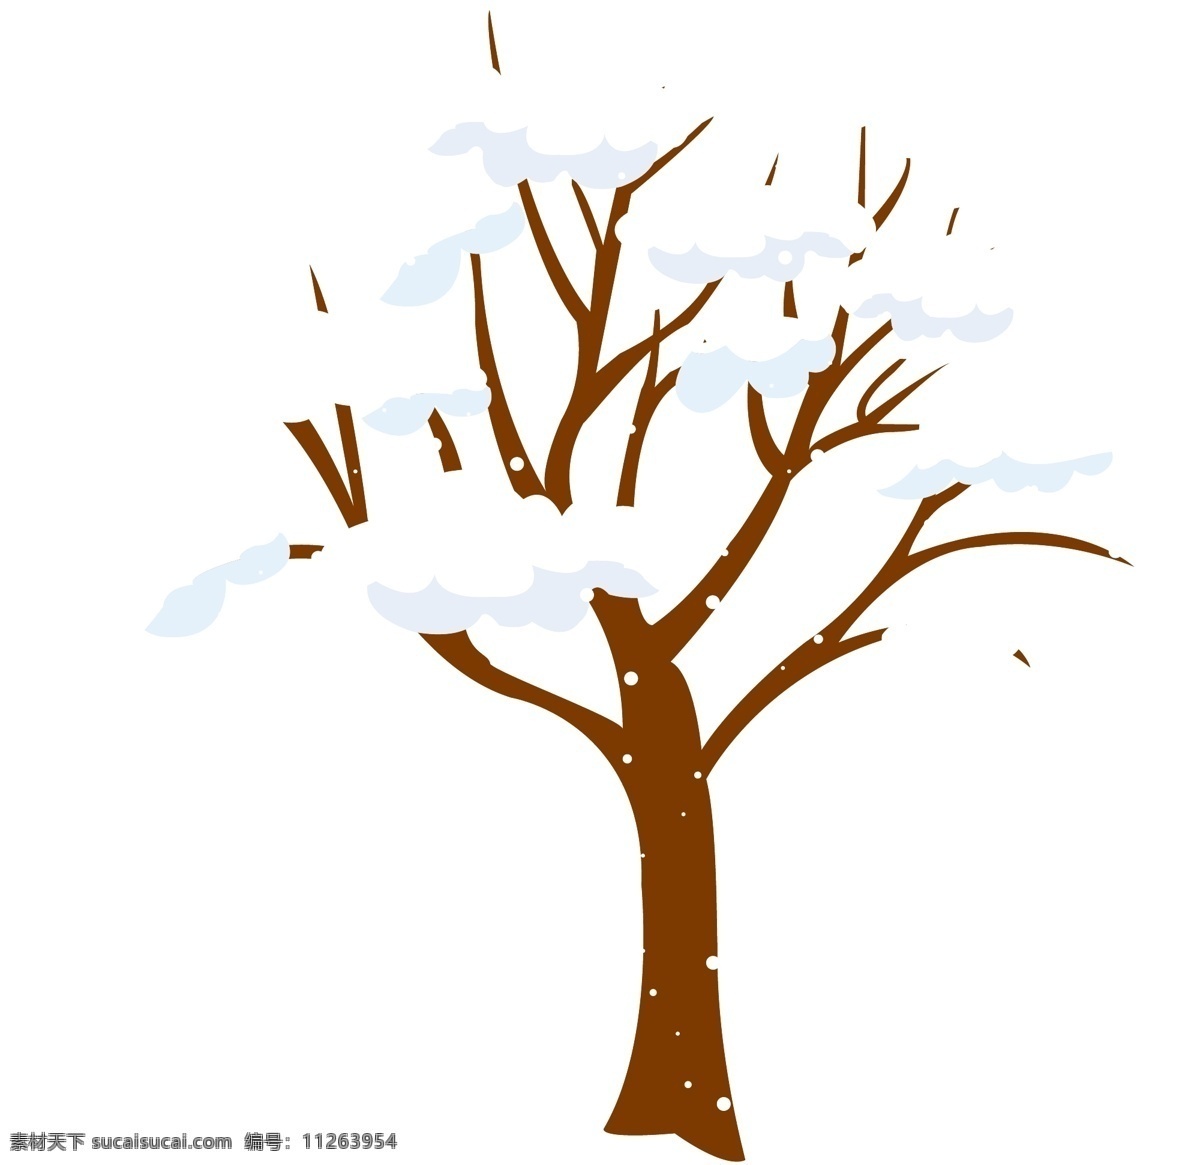 卡通 手绘 冬天 雪 树 矢量图 树木 树枝